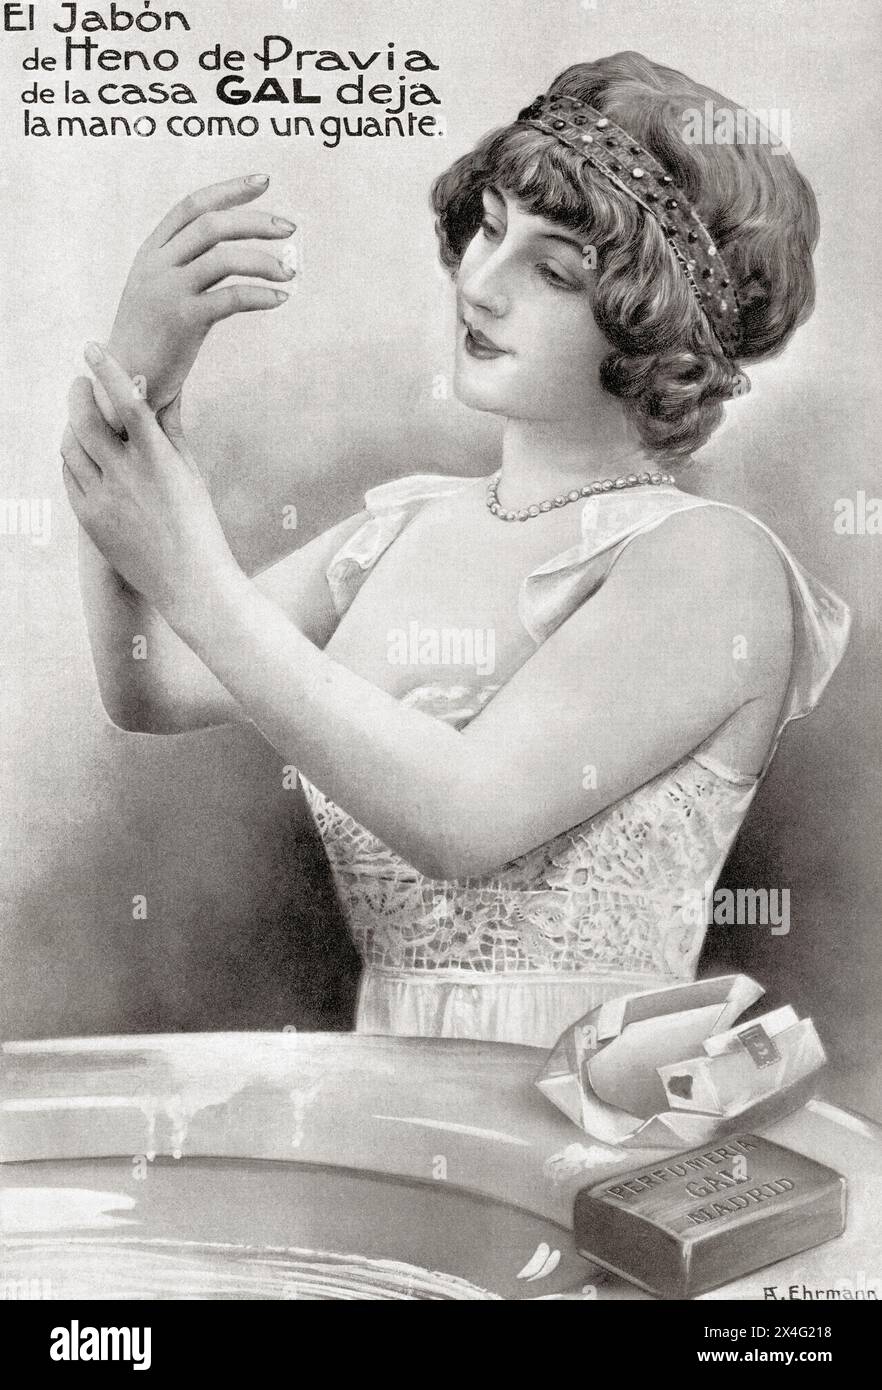 Pubblicità per il sapone spagnolo Heno de Pravia. La pubblicità dice che il sapone di Heno de Pravia della casa di Gal ti lascia la mano come un guanto. Da Mundo grafico, pubblicato nel 1912. Foto Stock